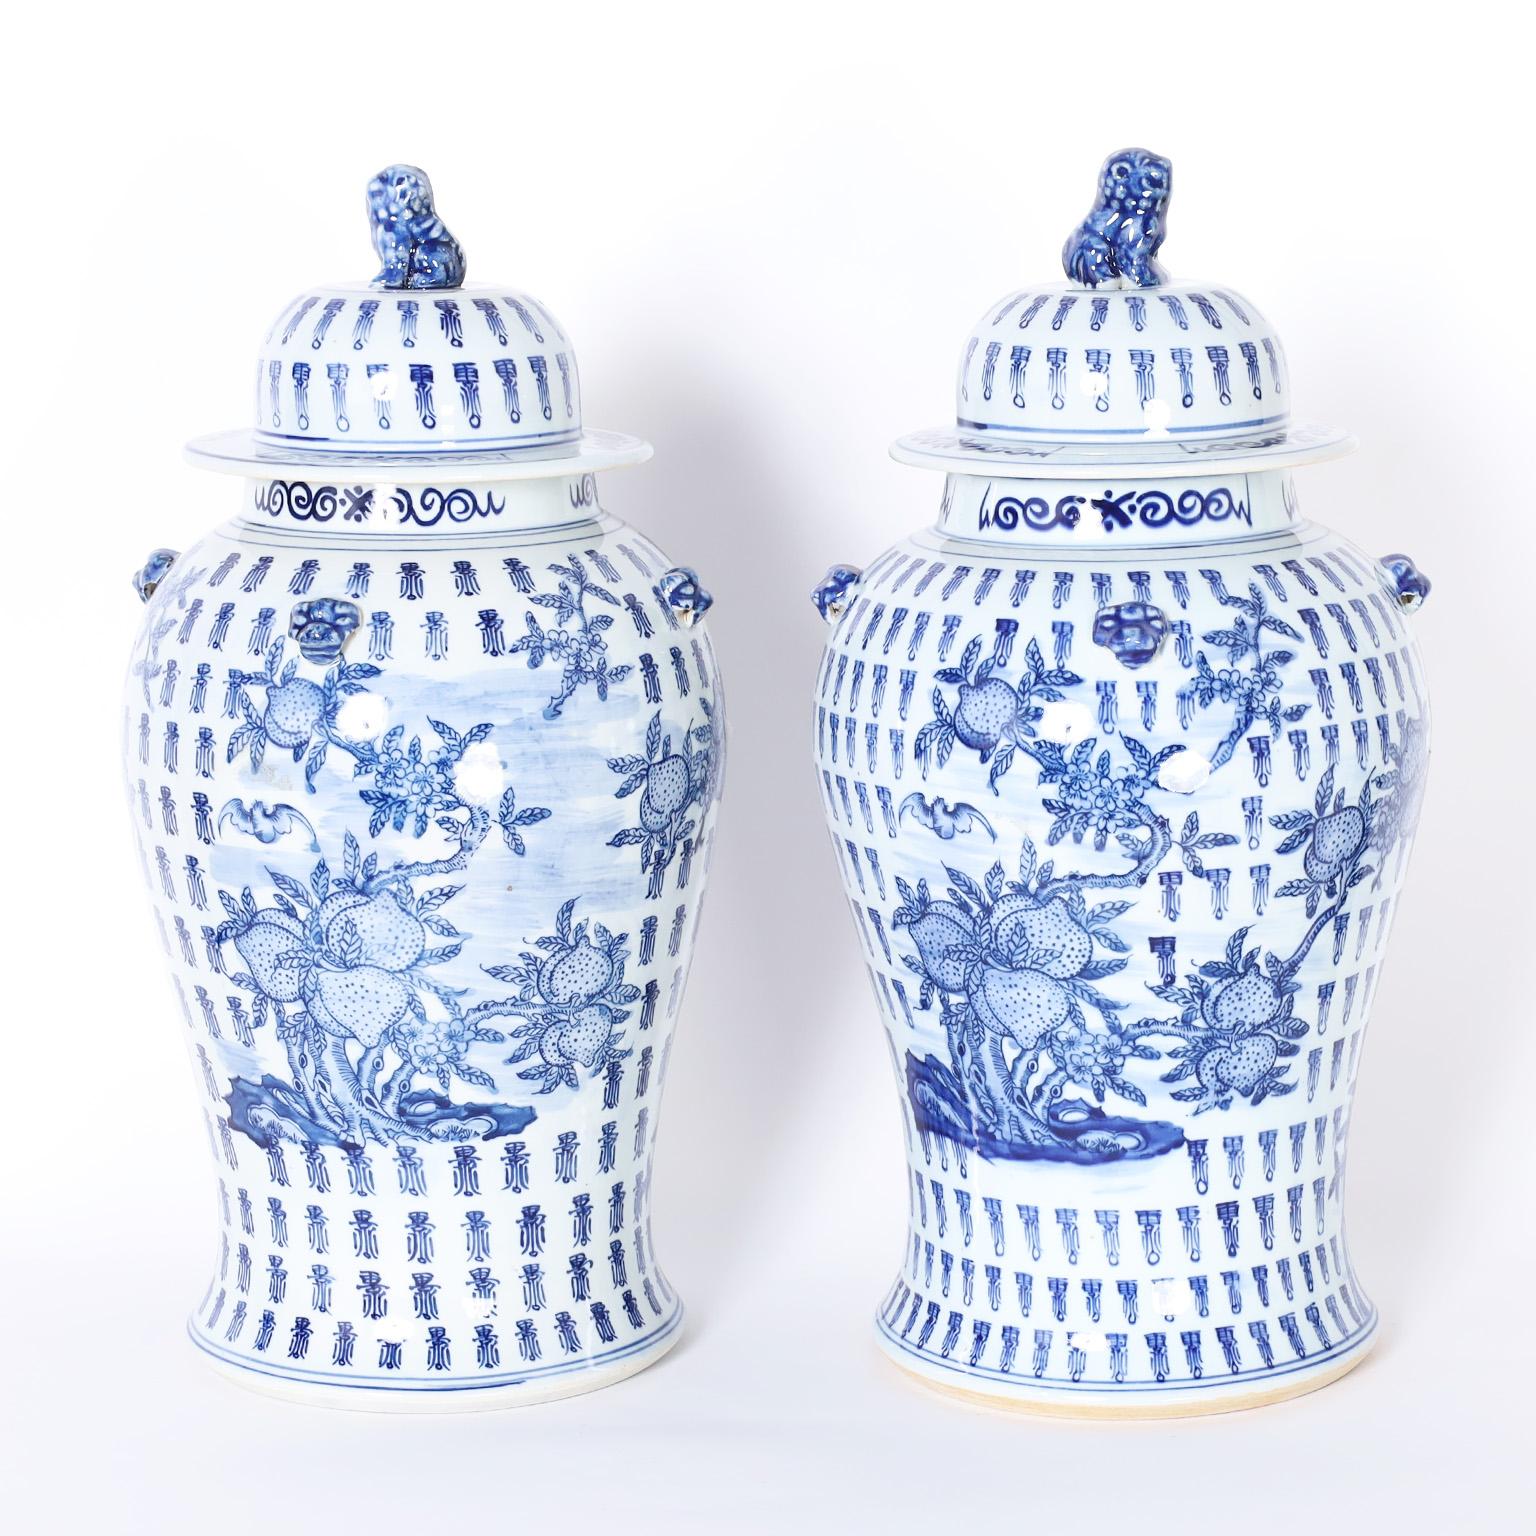 Zwei chinesische Urnen mit Deckel aus blau-weißem Porzellan in klassischer Form mit Foo-Dog-Griff auf der Oberseite und handdekoriert mit einer glücksverheißenden Komposition aus Obstbäumen und Vögeln in einem Feld aus sich wiederholenden Zeichen.